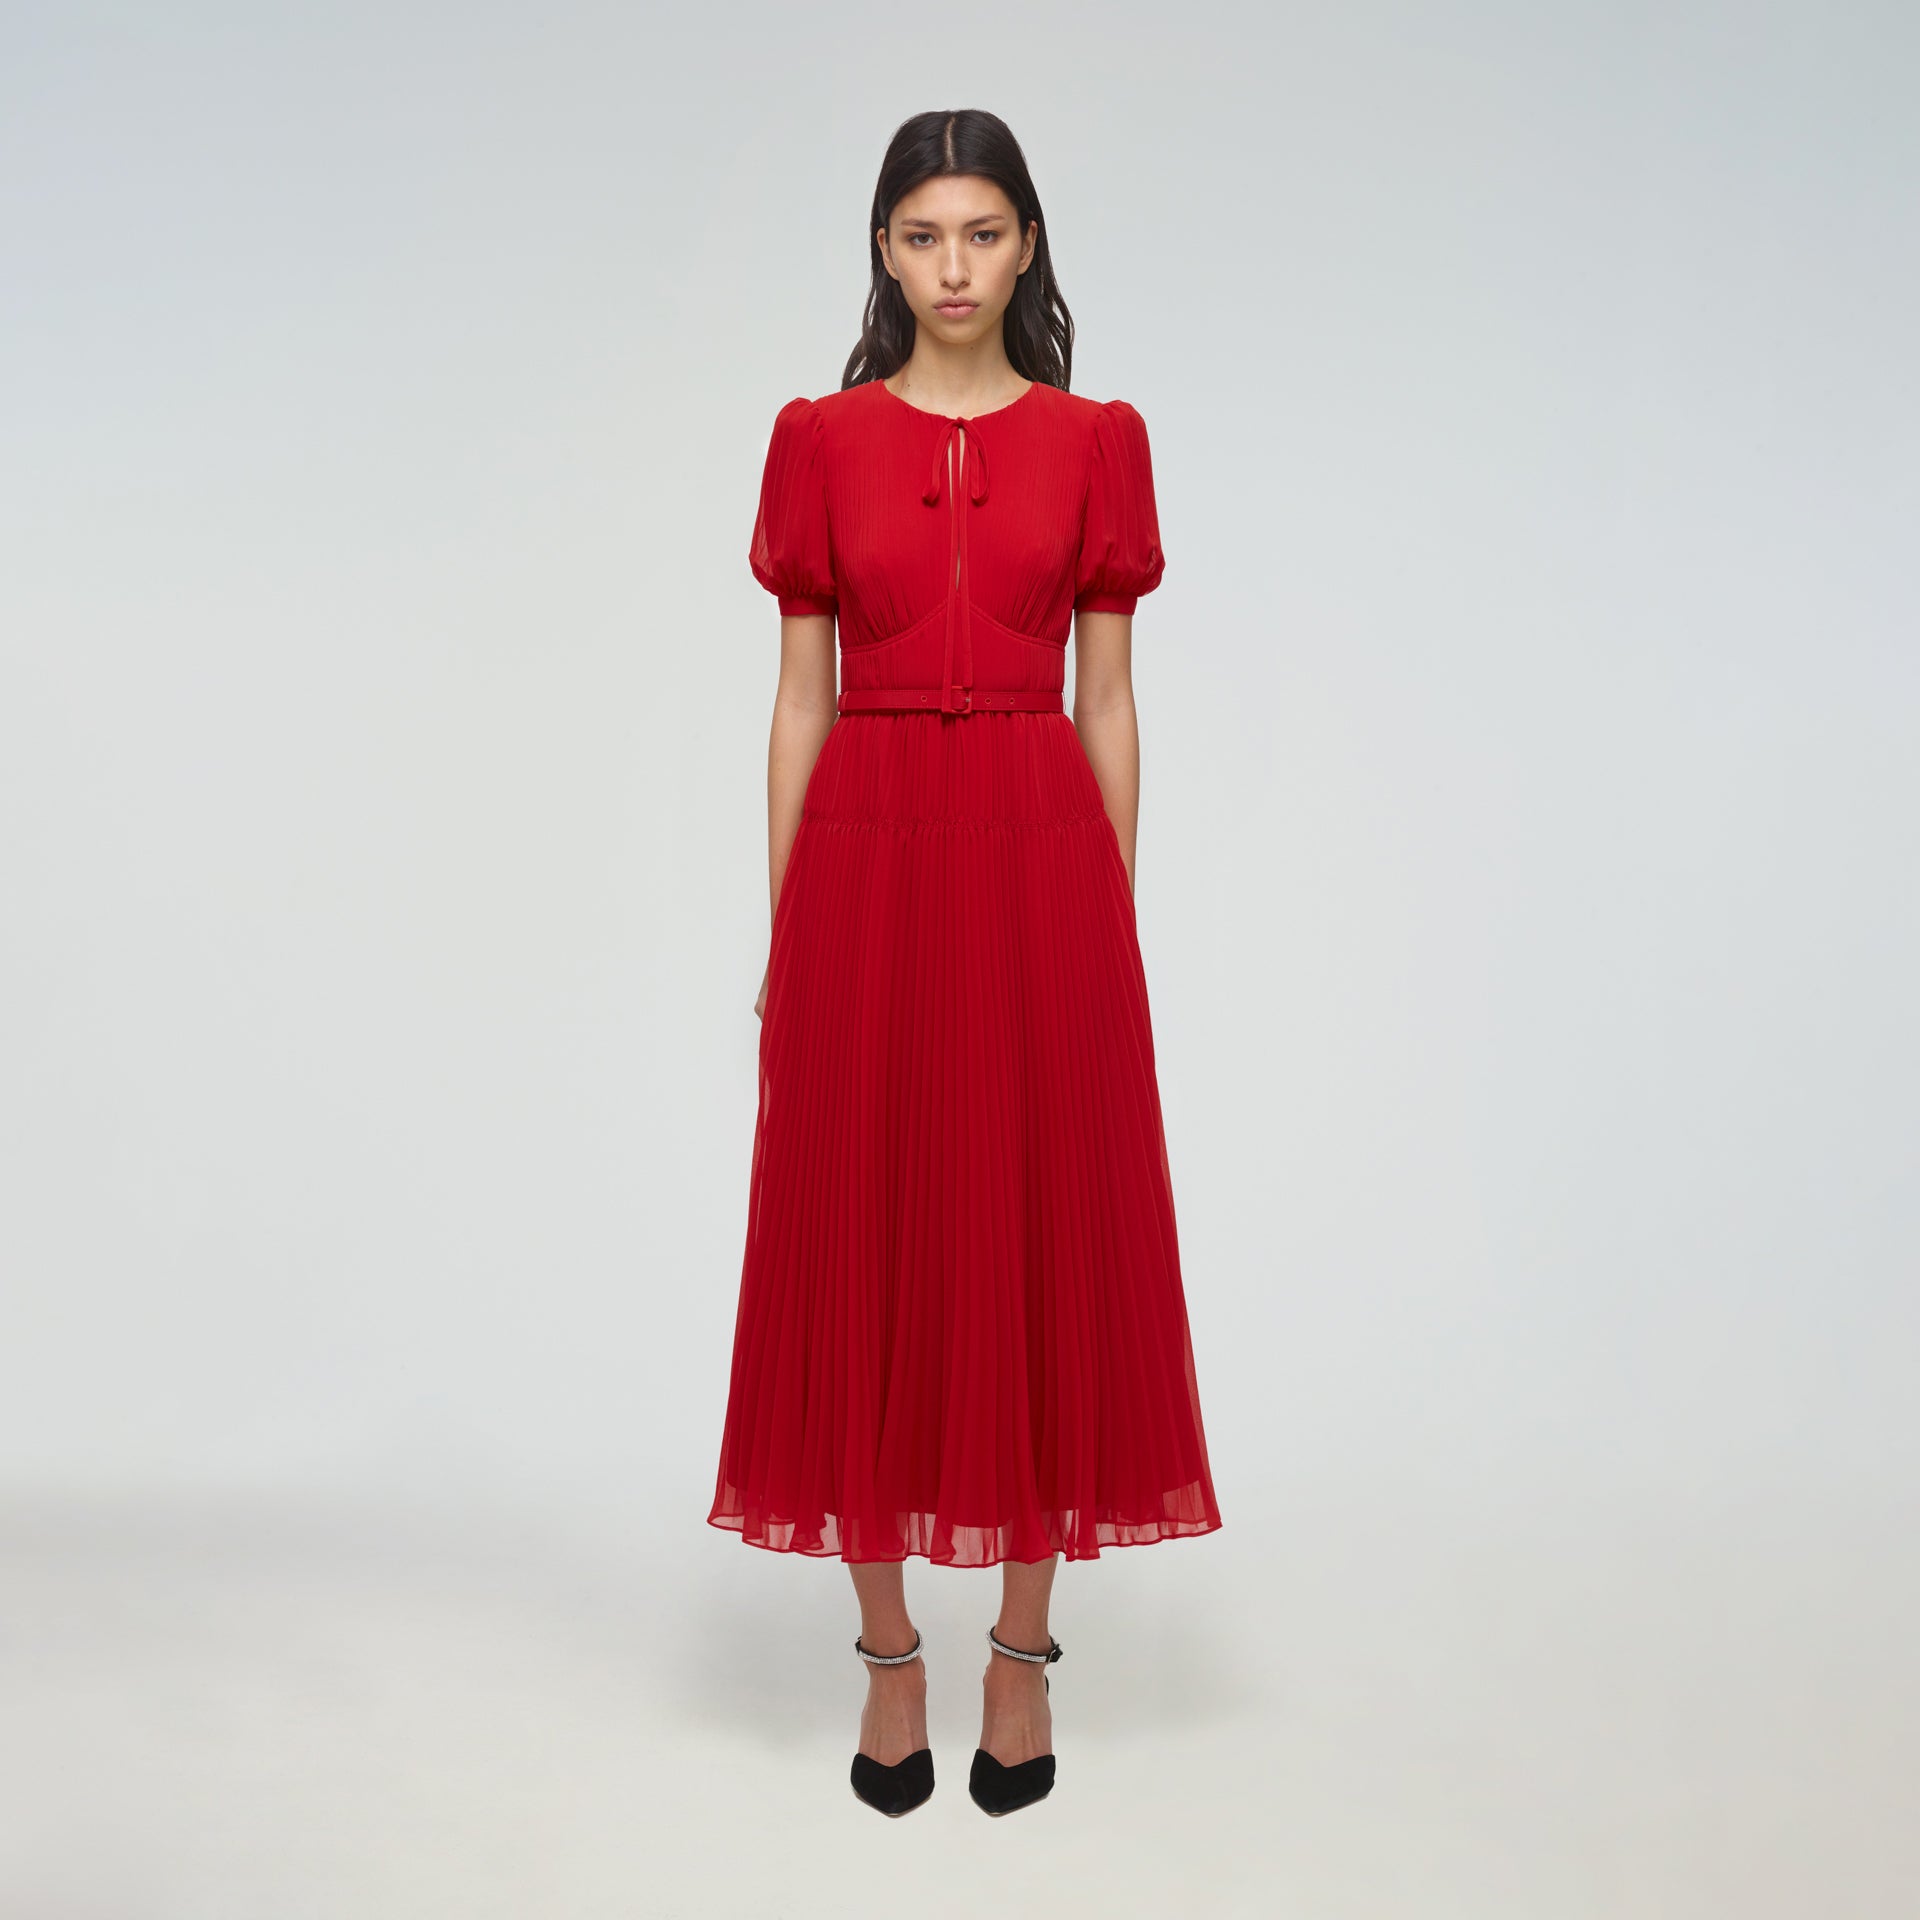 Red chiffon dress